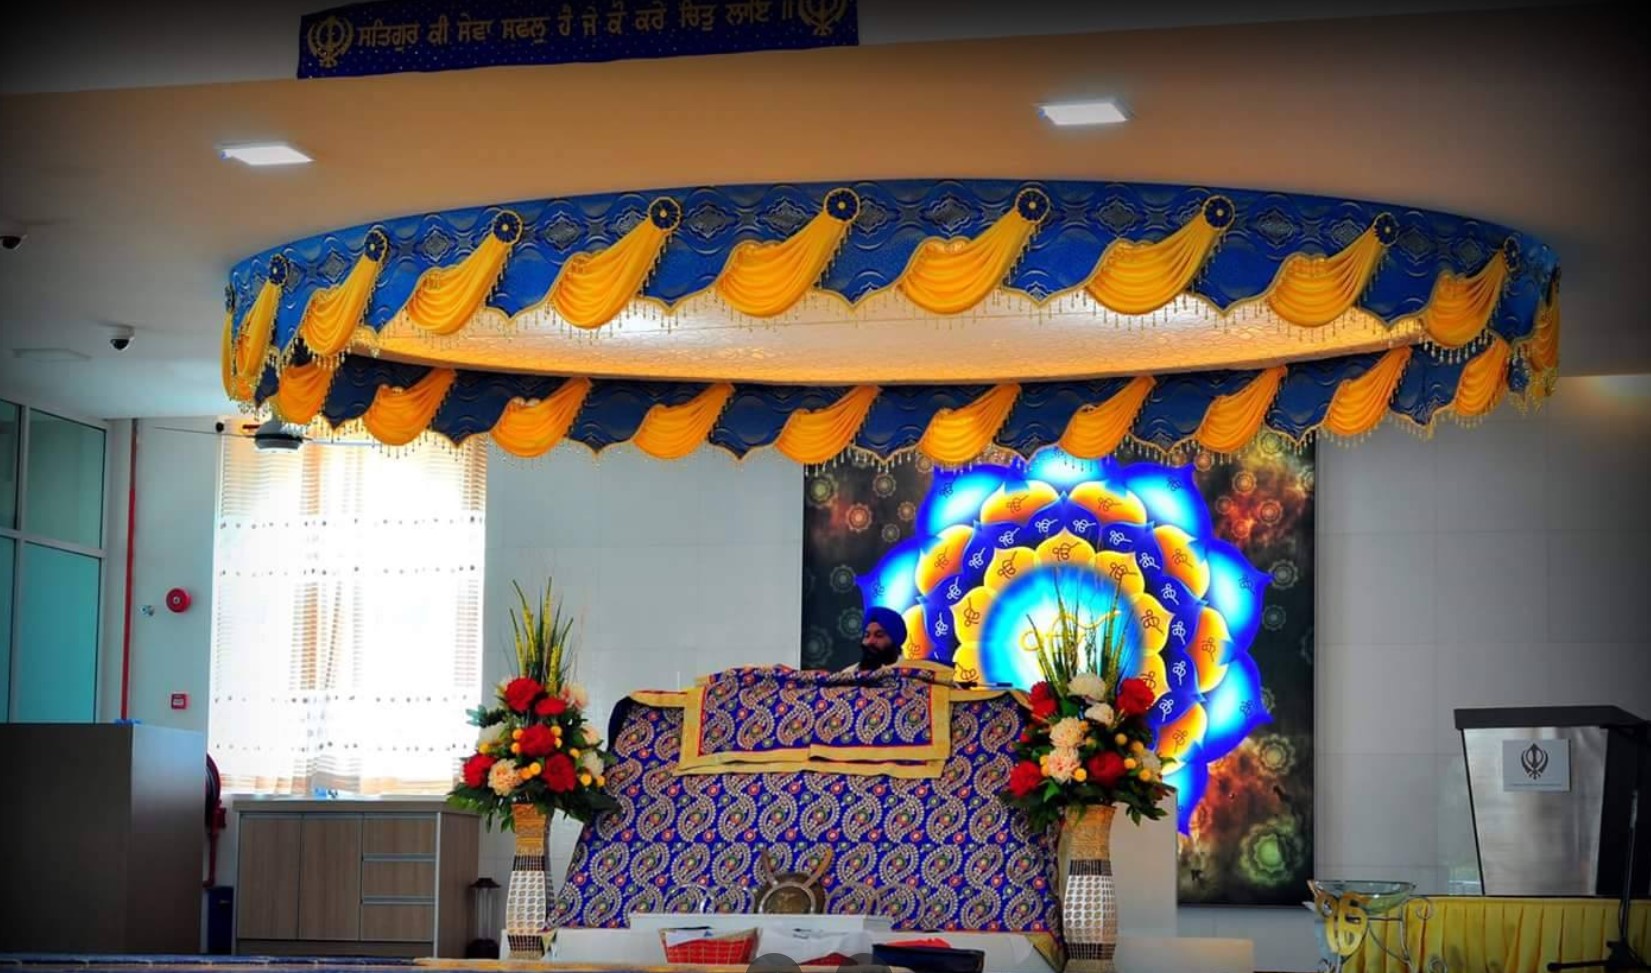 Gurdwara Sahib Guru Nanak Shah Alam